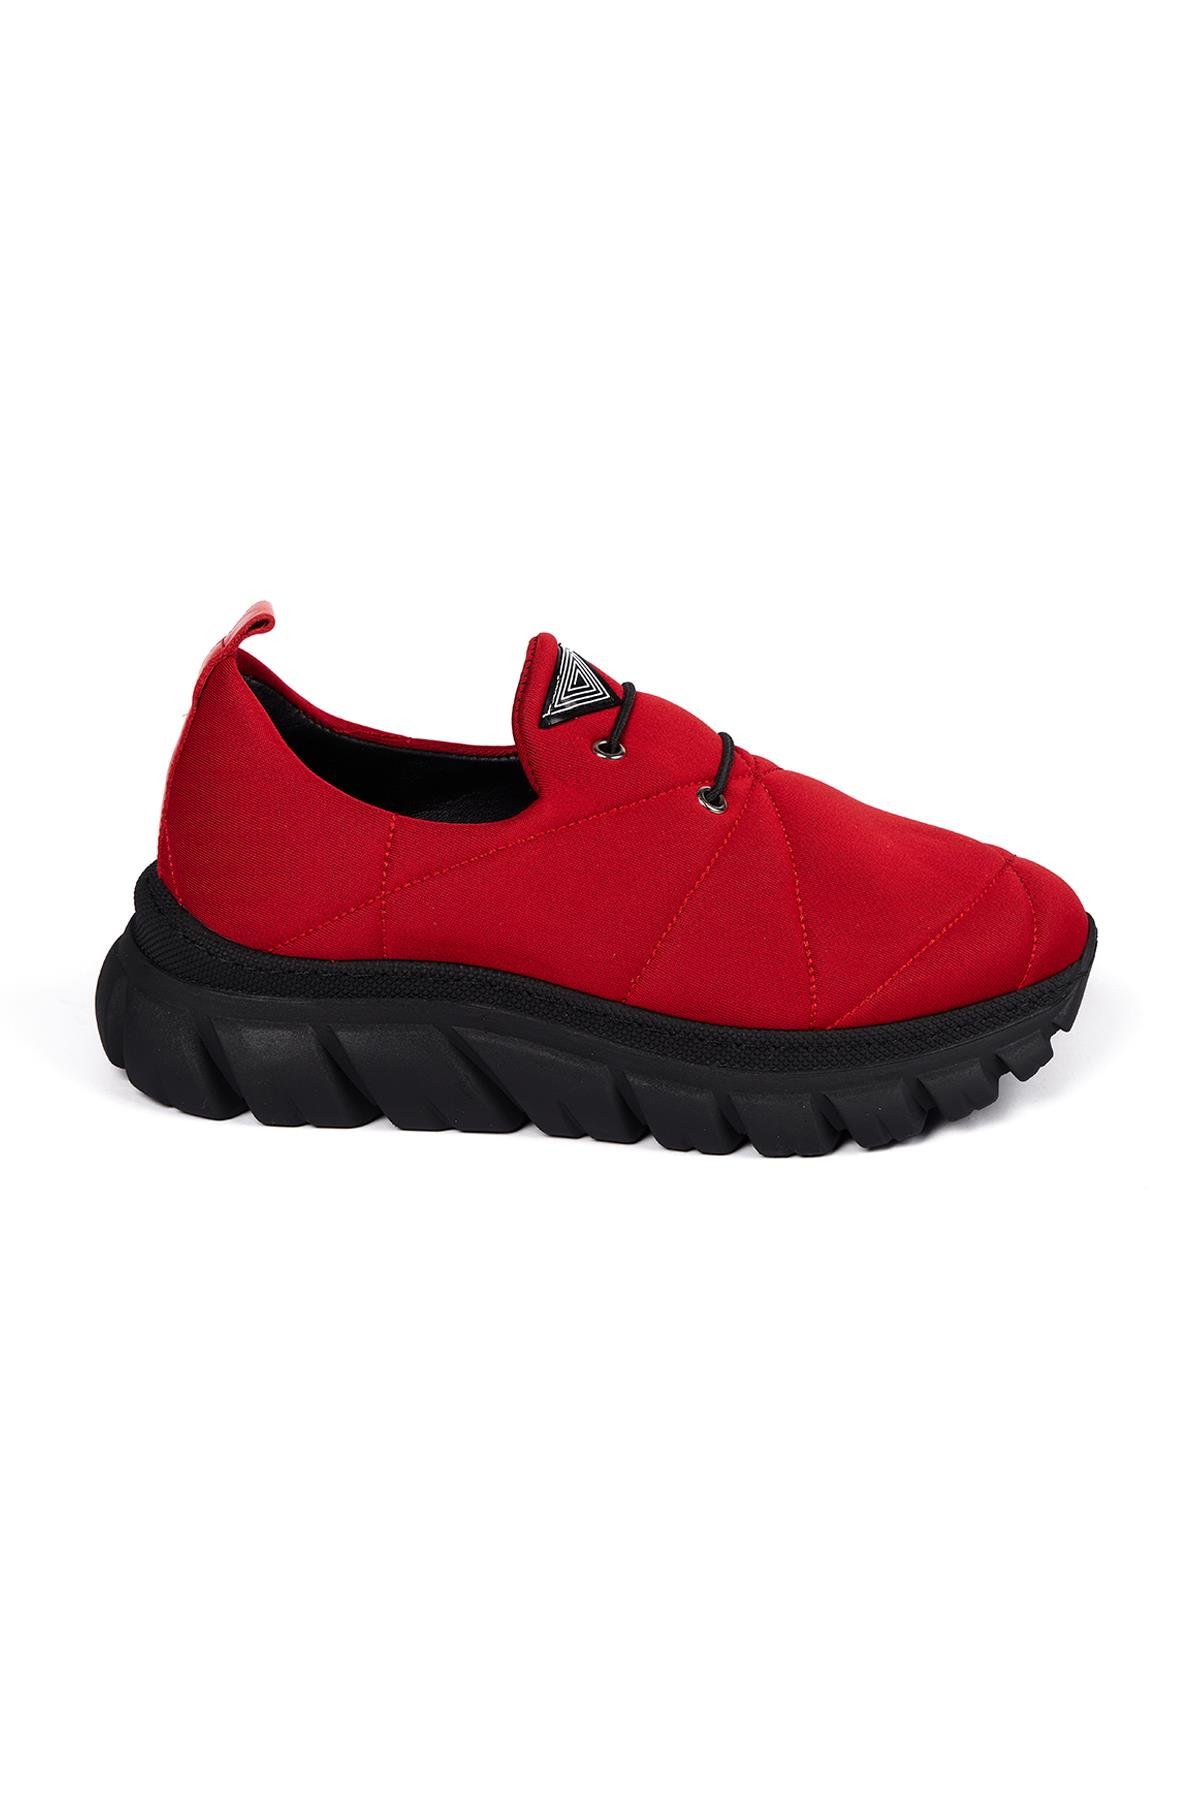 Bestello Bağcıksız Sneaker KIRMIZI 101-0020-18 Kadın Ayakkabı